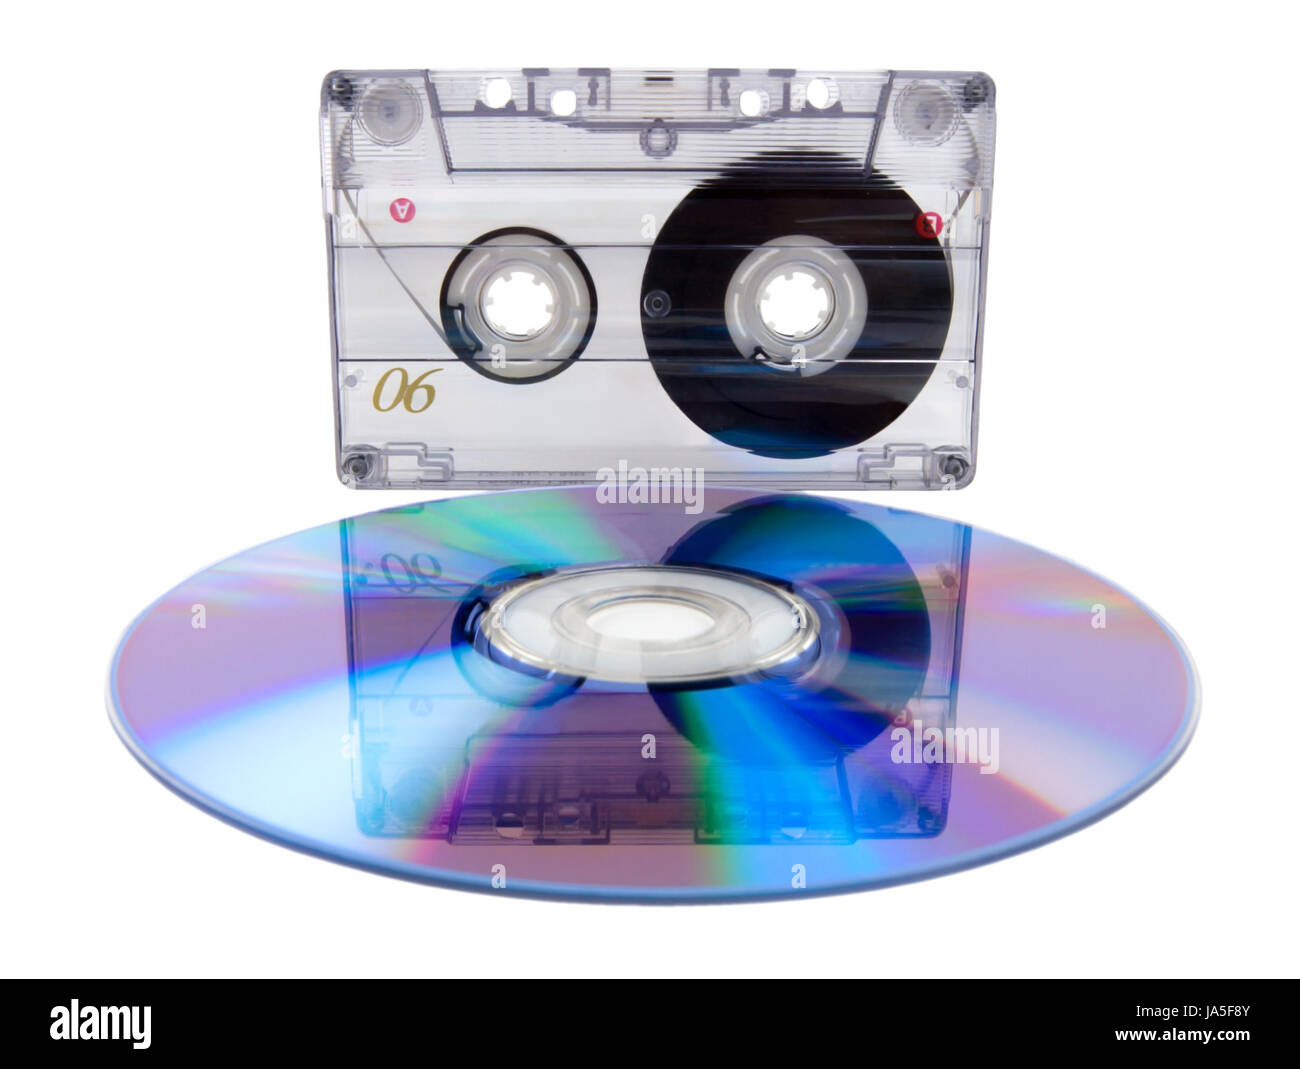 Cassette audio analogique et numérique compact disc isolé sur fond blanc Banque D'Images